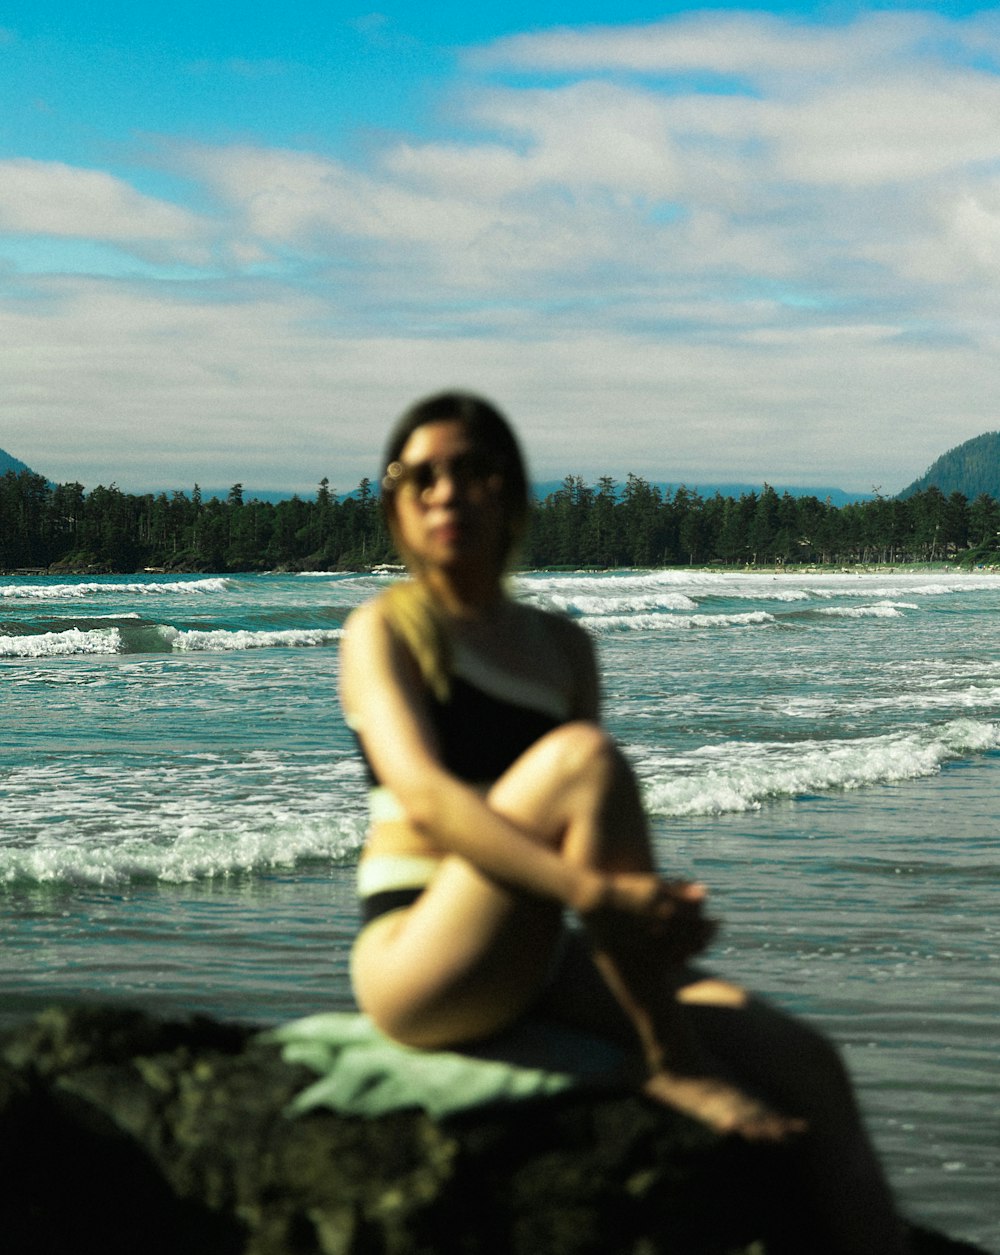 바다 앞 바위에 앉아 있는 여자